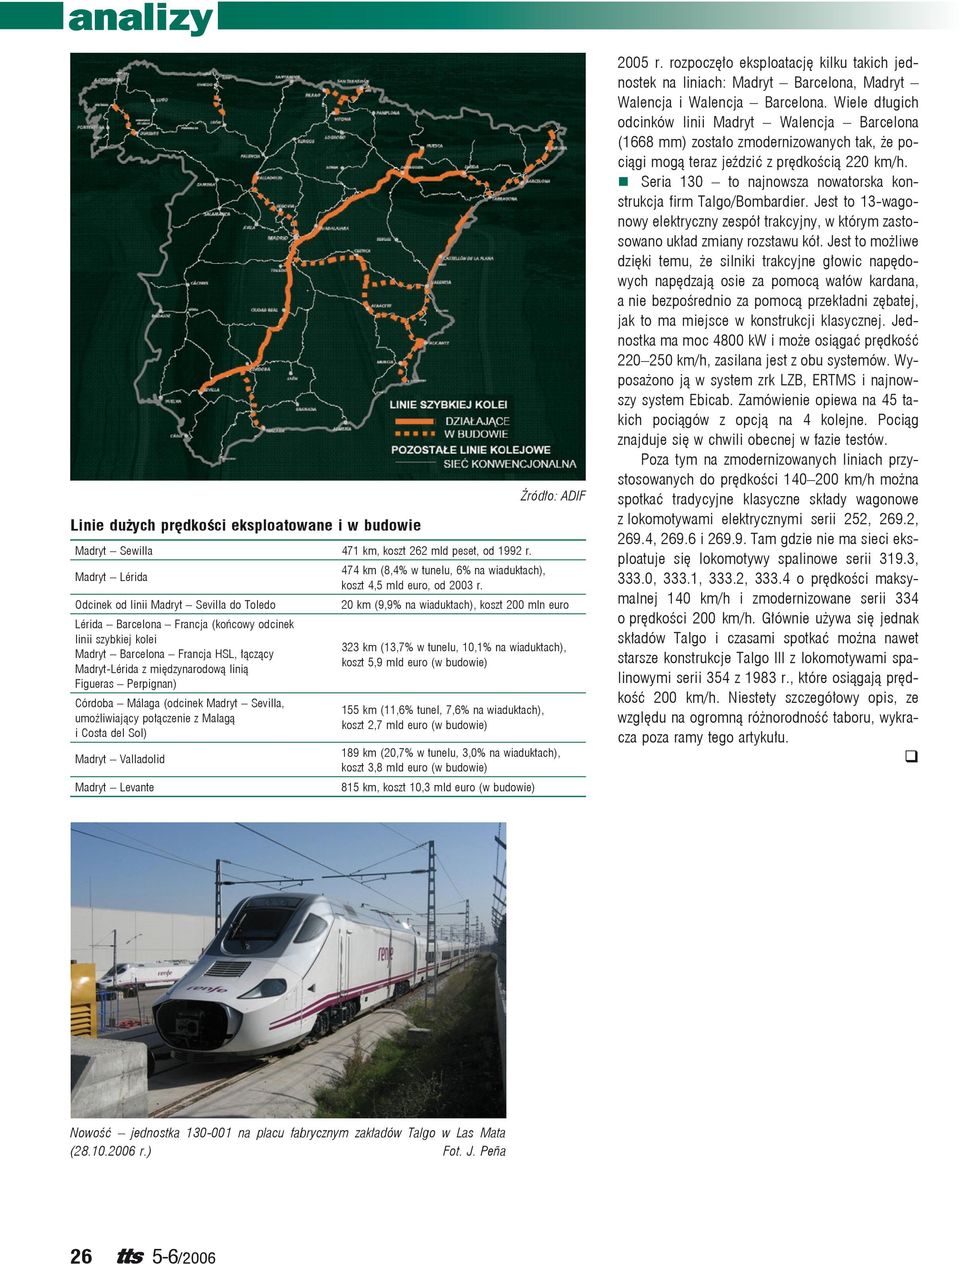 Odcinek od linii Madryt Sevilla do Toledo 20 km (9,9% na wiaduktach), koszt 200 mln euro Lérida Barcelona Francja (końcowy odcinek linii szybkiej kolei 323 km (13,7% w tunelu, 10,1% na wiaduktach),